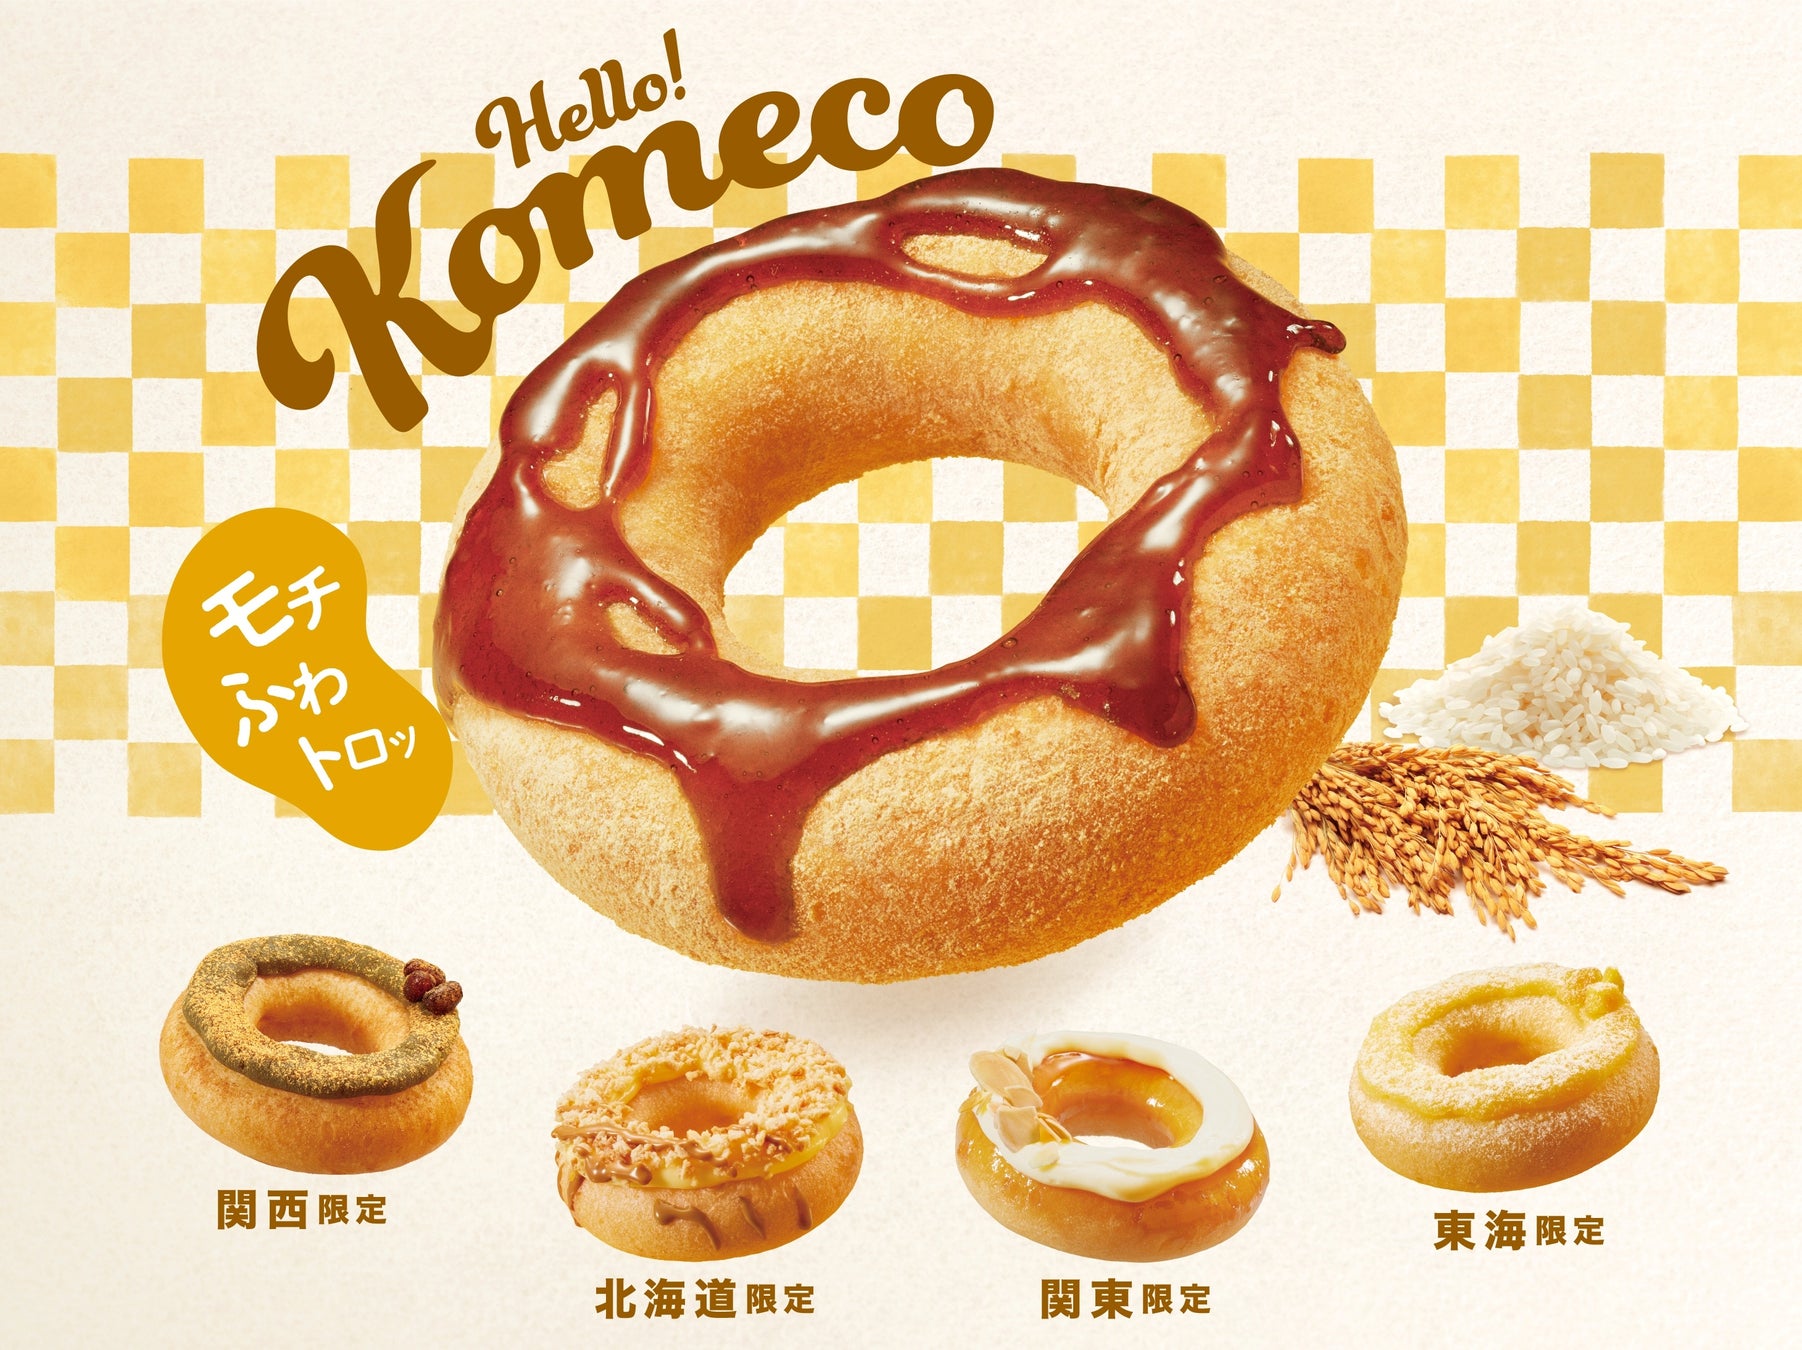 クリスピー・クリーム・ドーナツ初の国産米粉入りドーナツが新登場　“モチ、ふわ、トロッ”の新食感で日本の魅力を発信！　『Hello! Komeco』